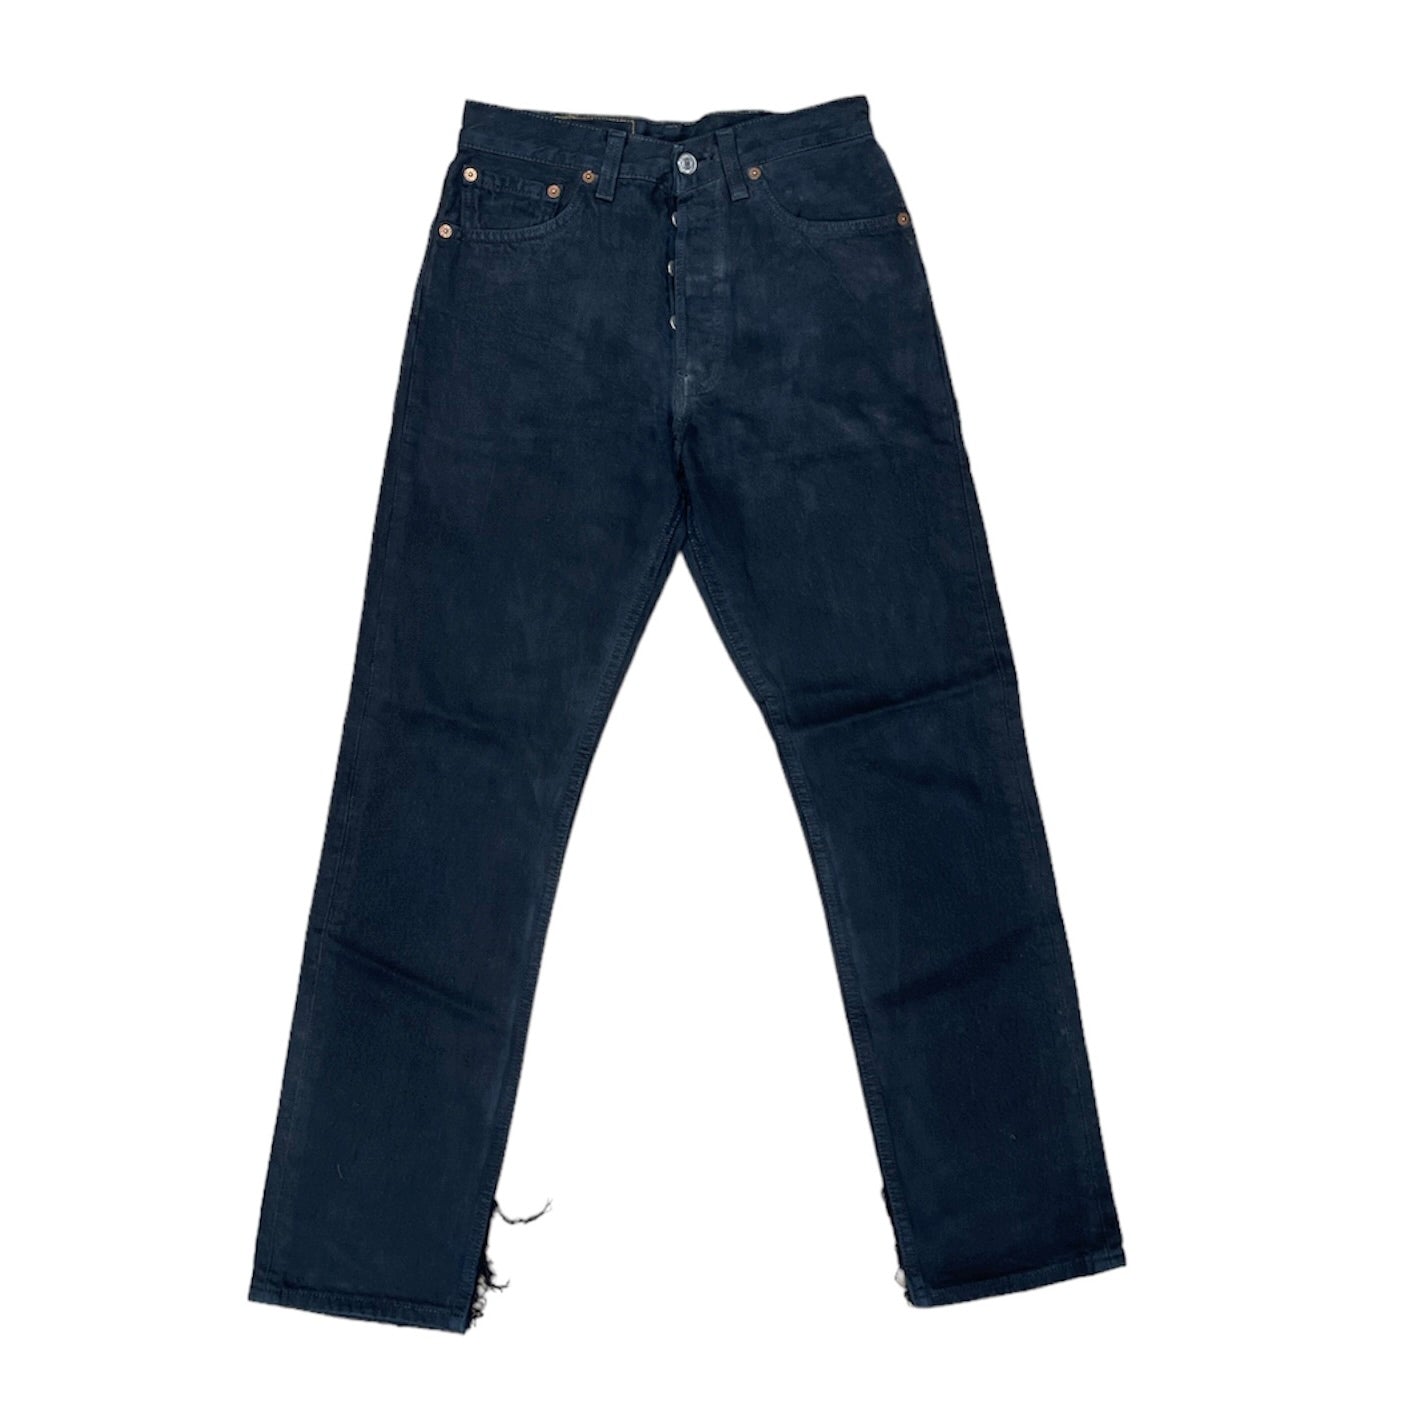 Vintage Levis 501 Black Jeans (W28/30)